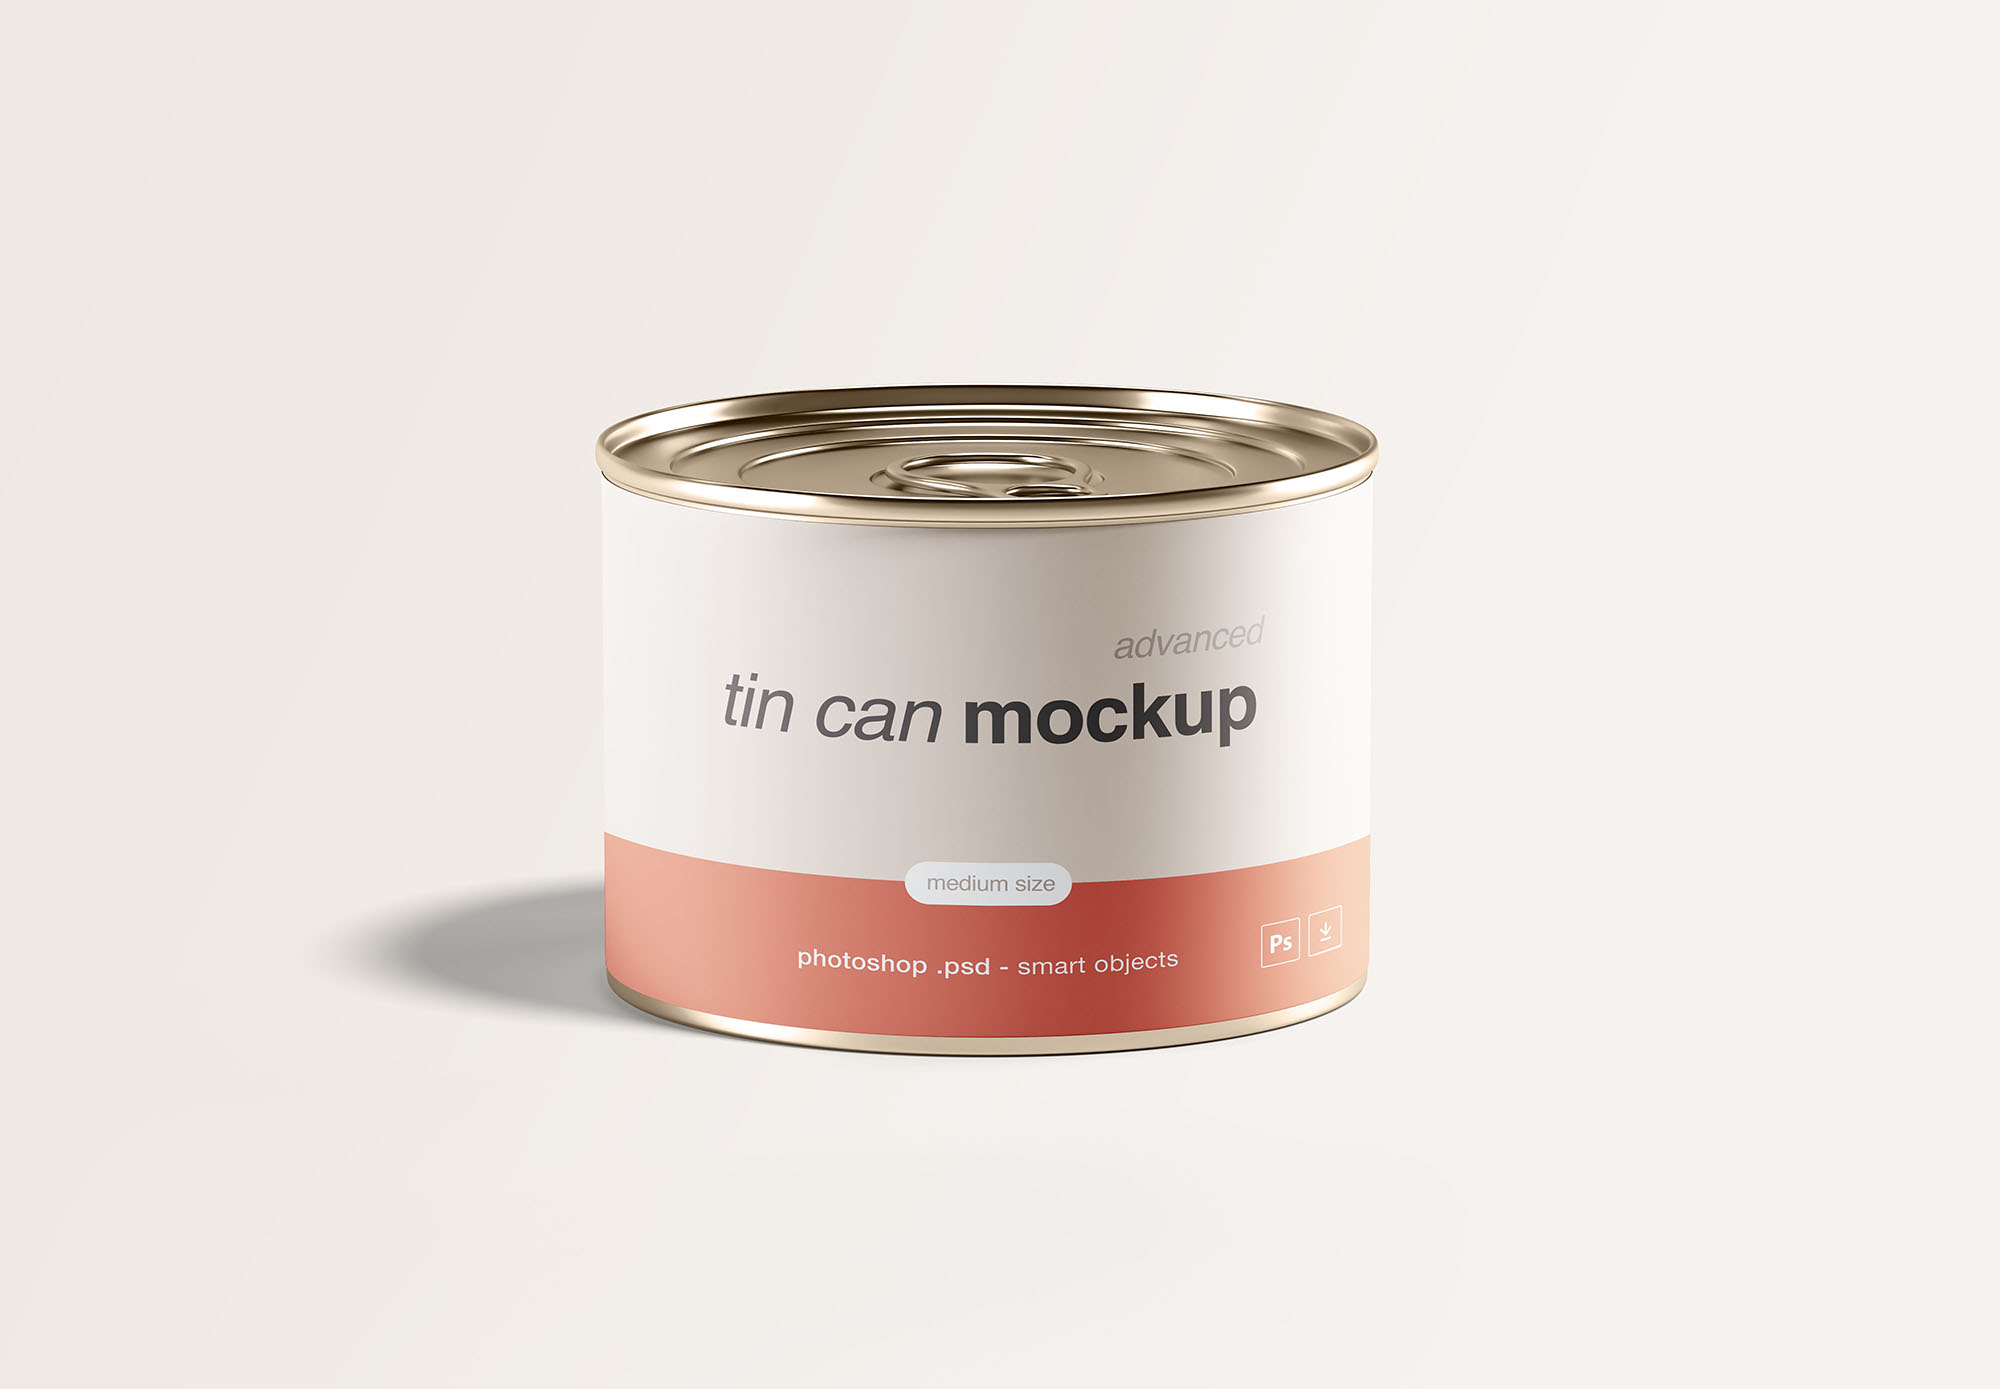 中型锡罐食品罐头外观设计样机模板 Medium Tin Can Mockup插图